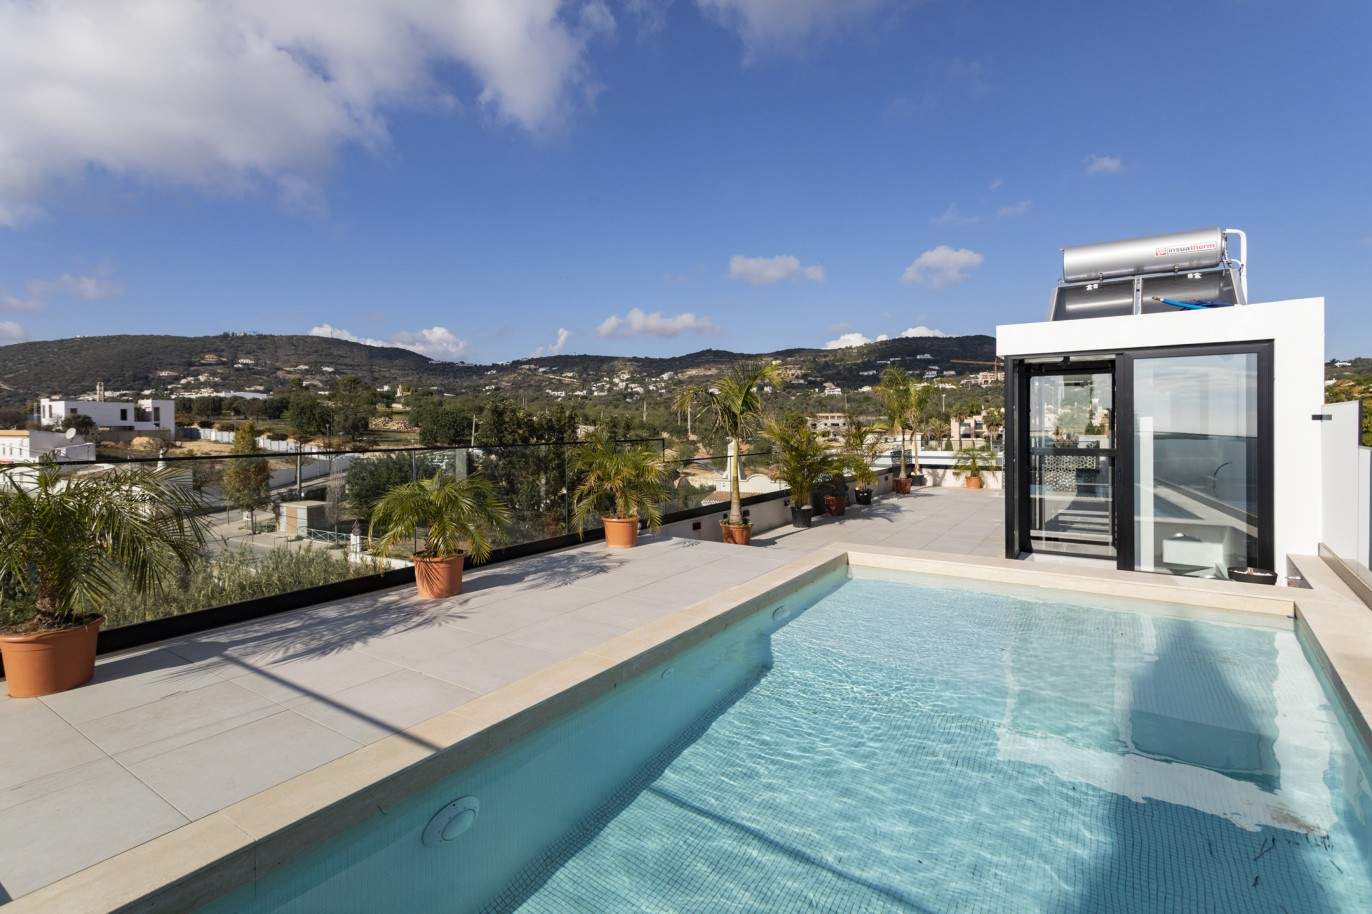 Villa de 3 dormitorios, con piscina, en venta en Santa Barbara de Nexe, Algarve_213420